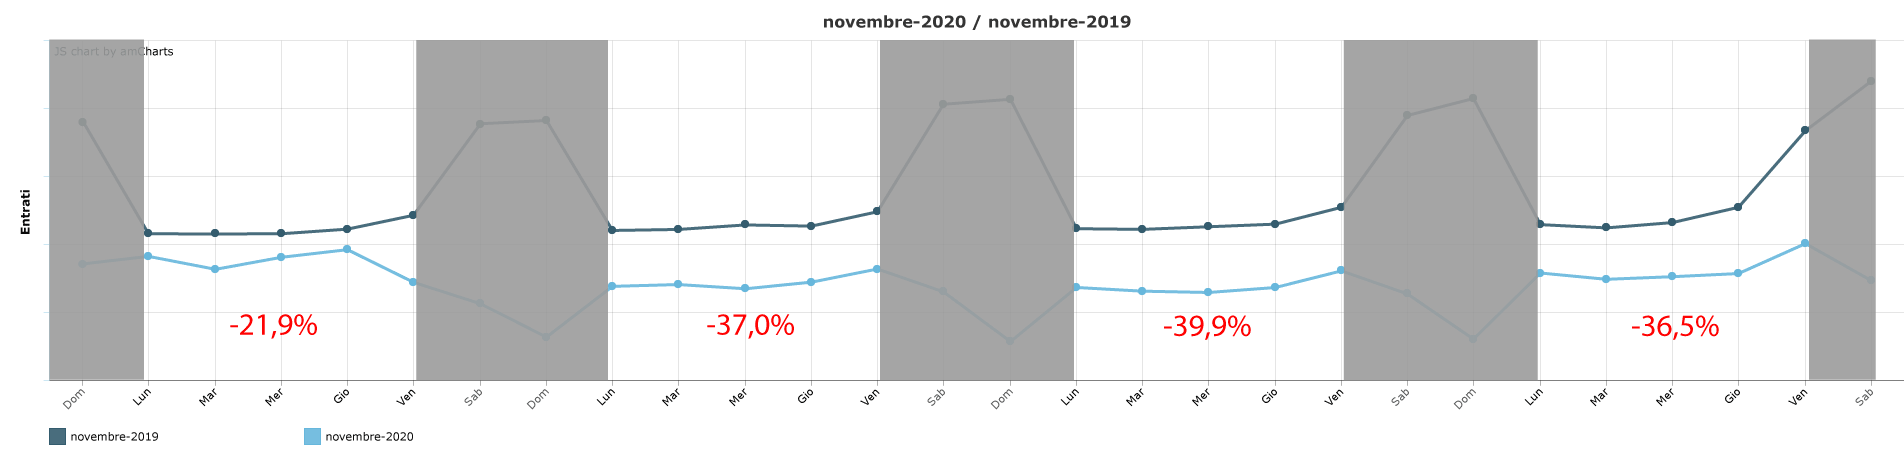 trend-novembre-2020-senza-weekend